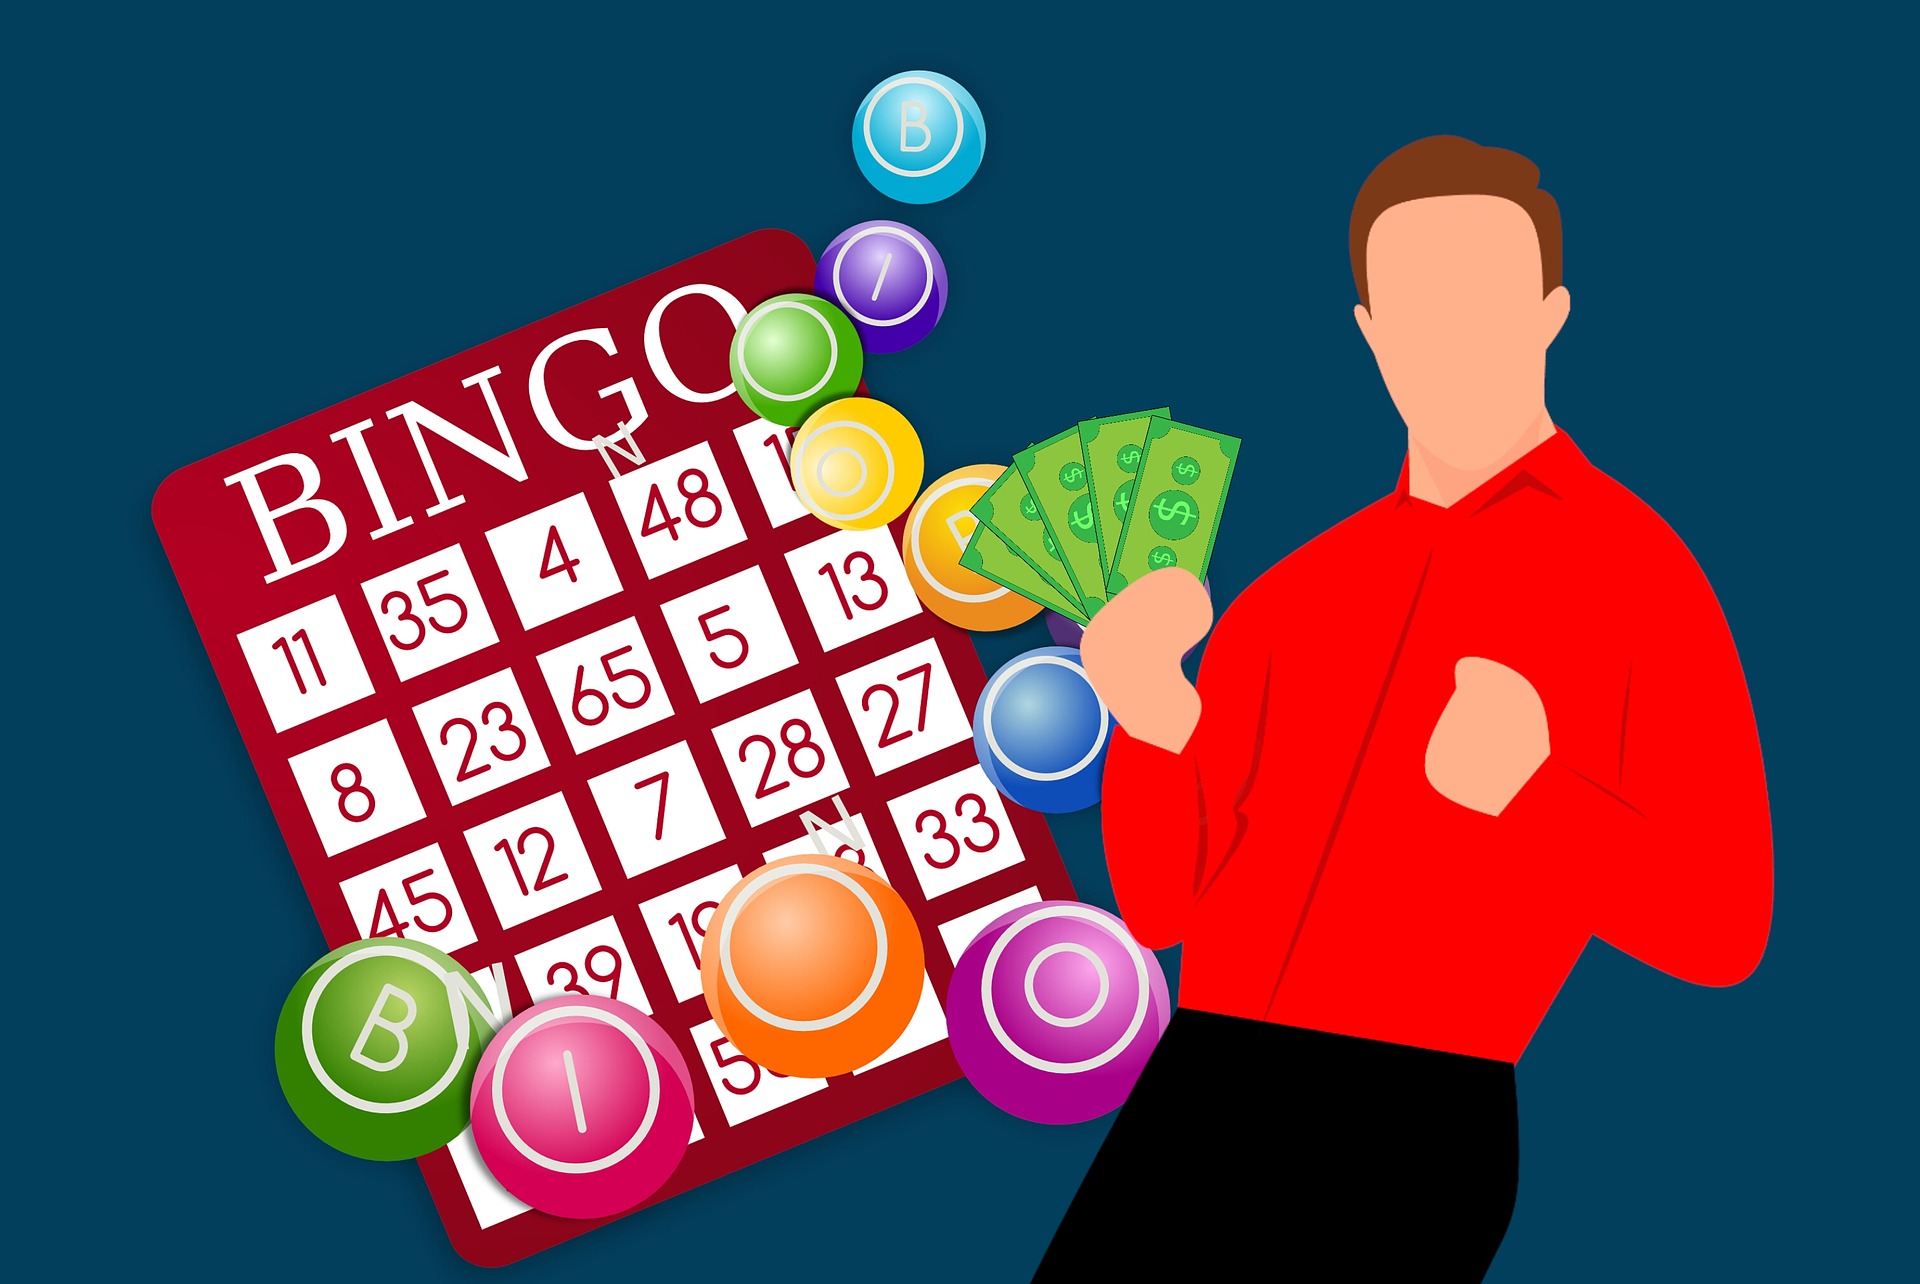 Licencias de bingo en España